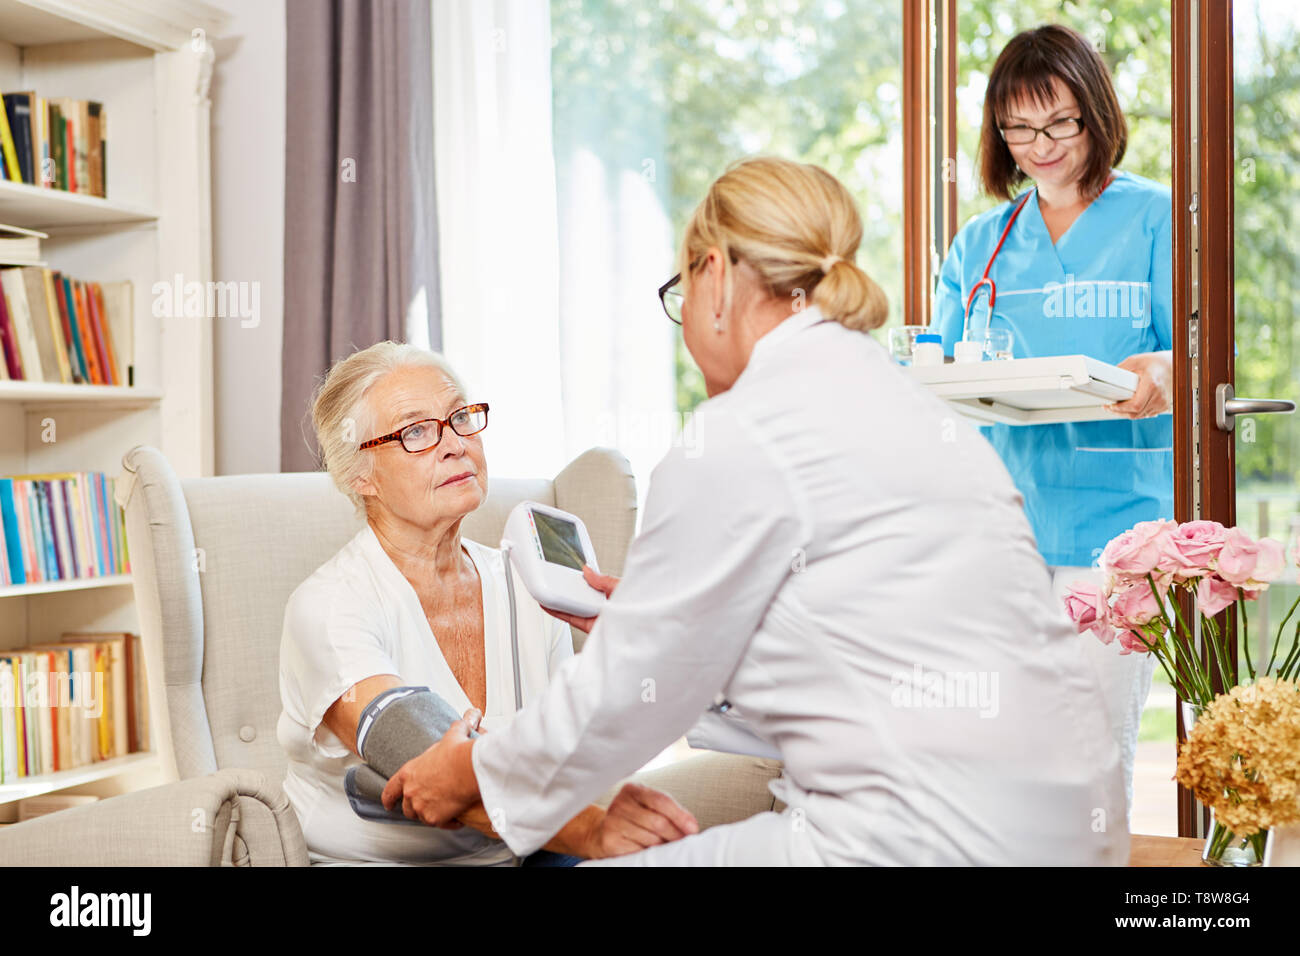 Medico donna misura la pressione del sangue come una misura precauzionale con un anziano nella sua Senior Citizen's home Foto Stock